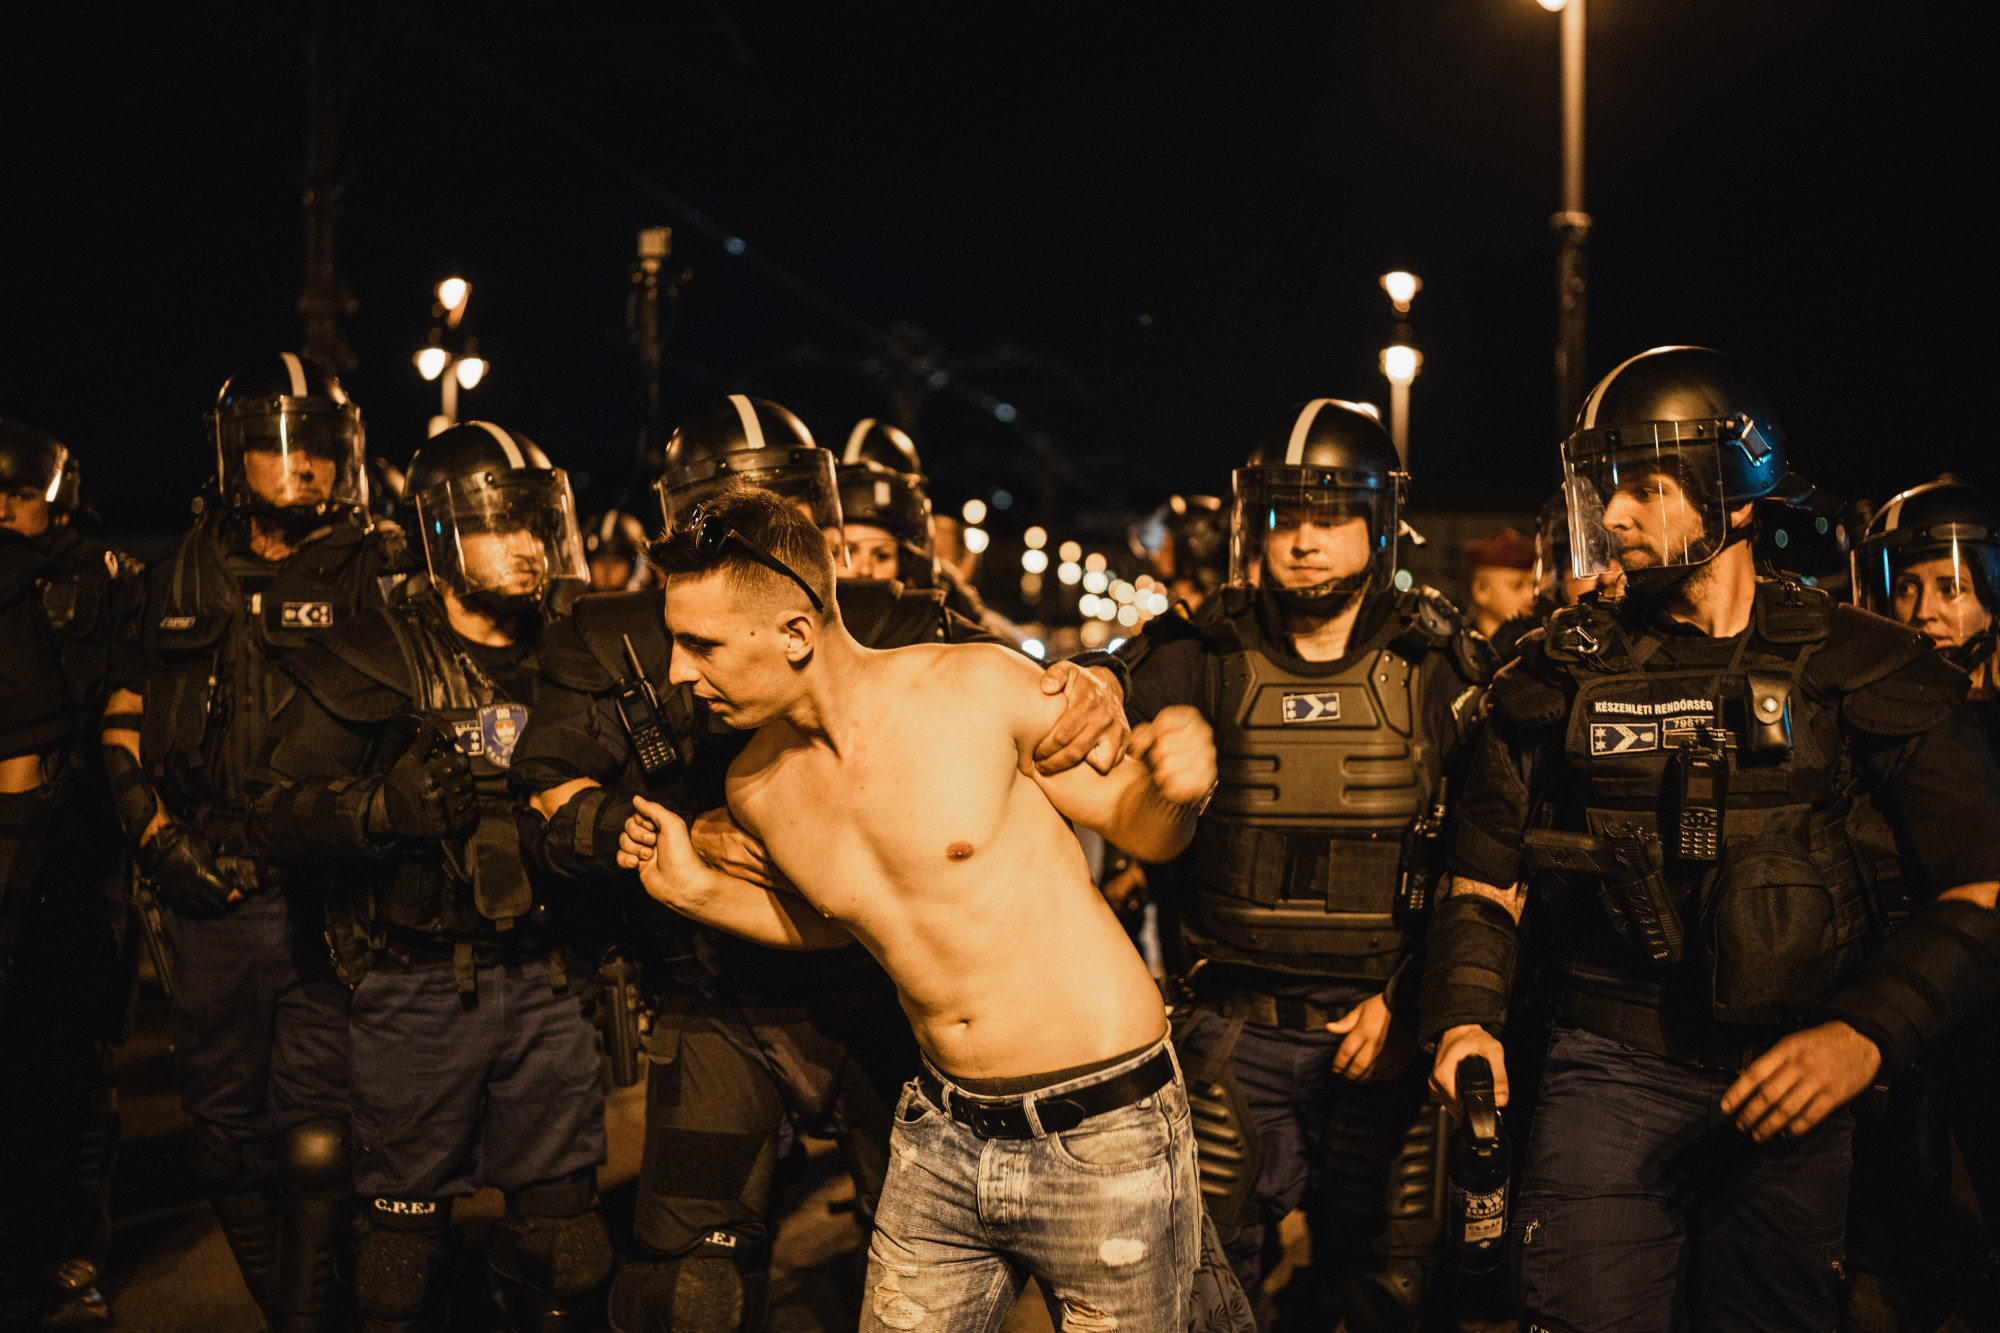 Egy dühös budapesti éjszaka képei kormányzati megszorítások idején